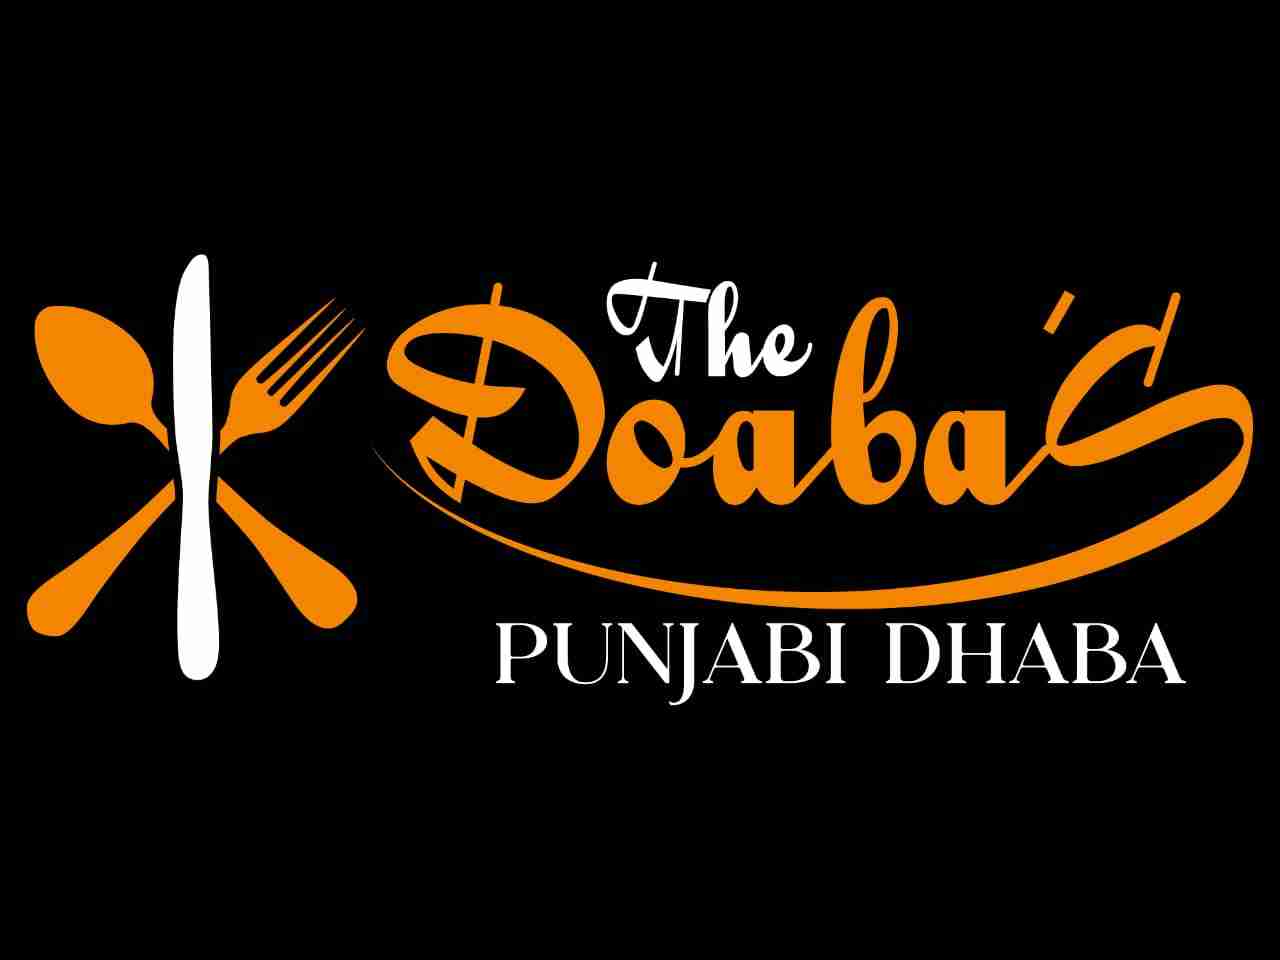 Punjabi Dhaba & Family Restaurant, Virar - Restaurant reviews